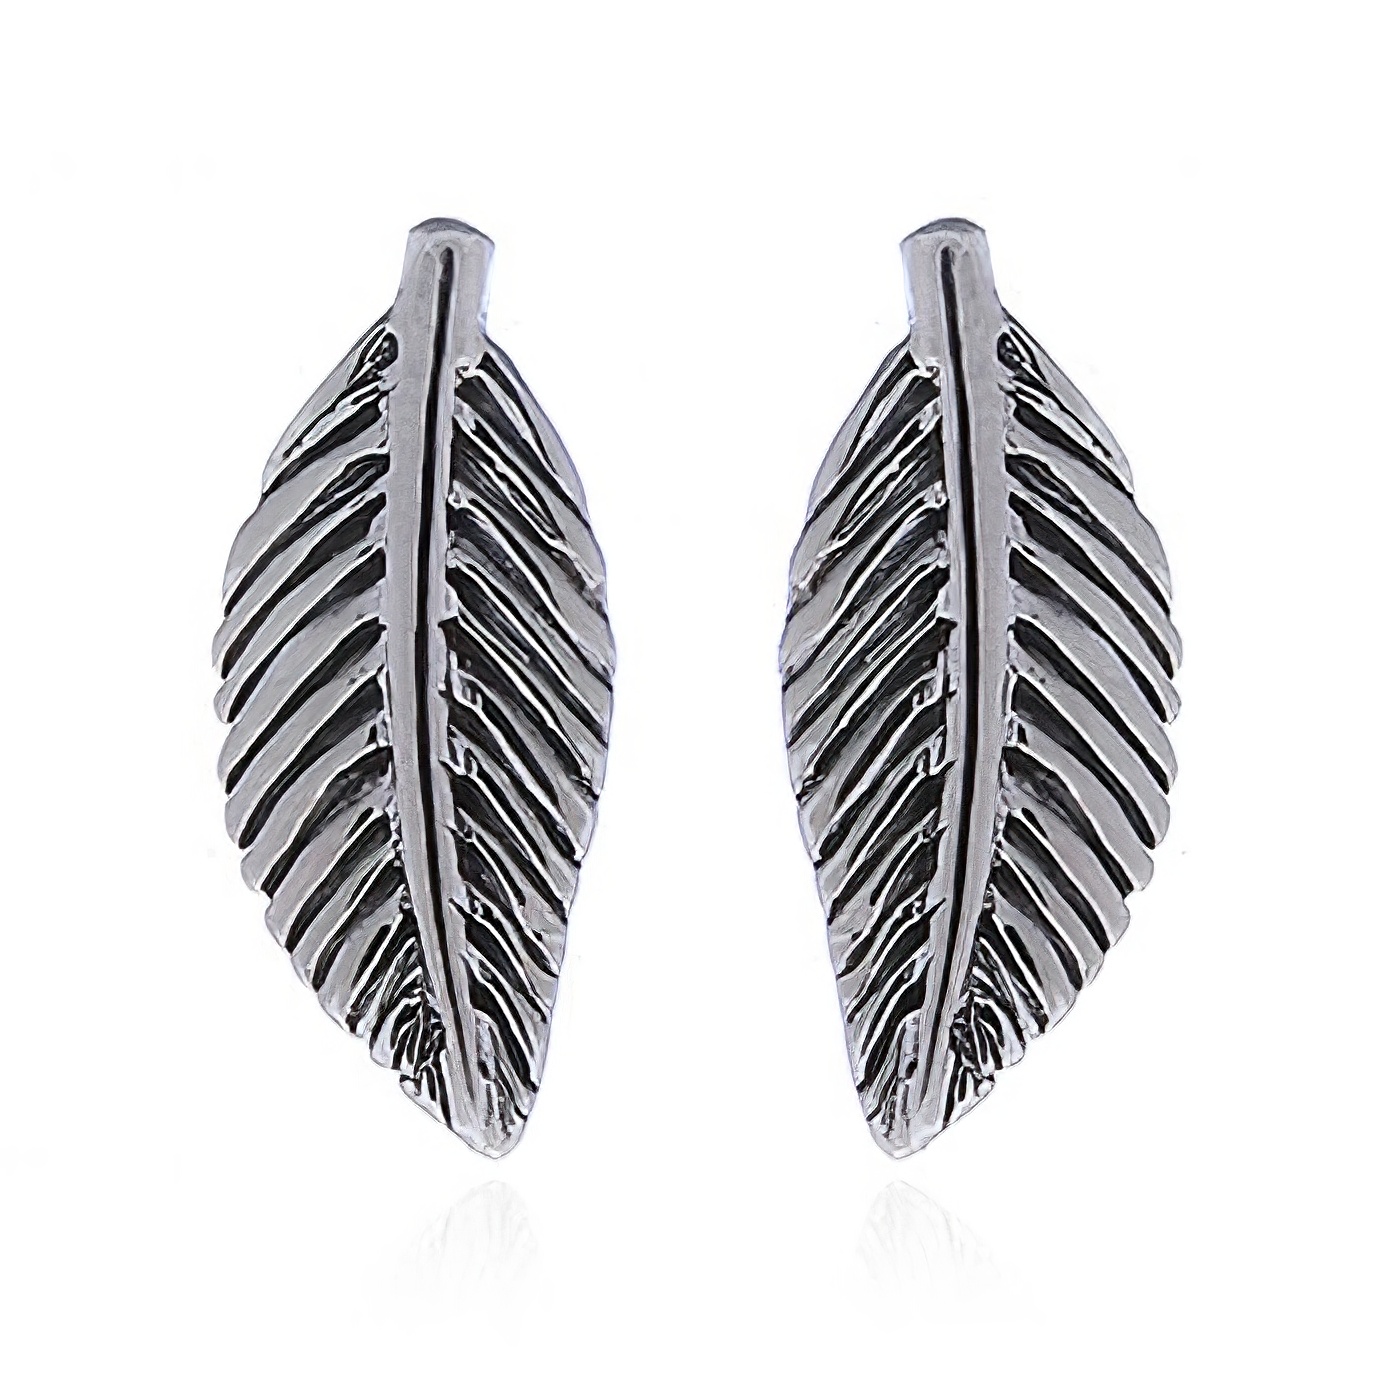 Oxidized 925 Silver Leaf Stud Earrings by BeYindi 